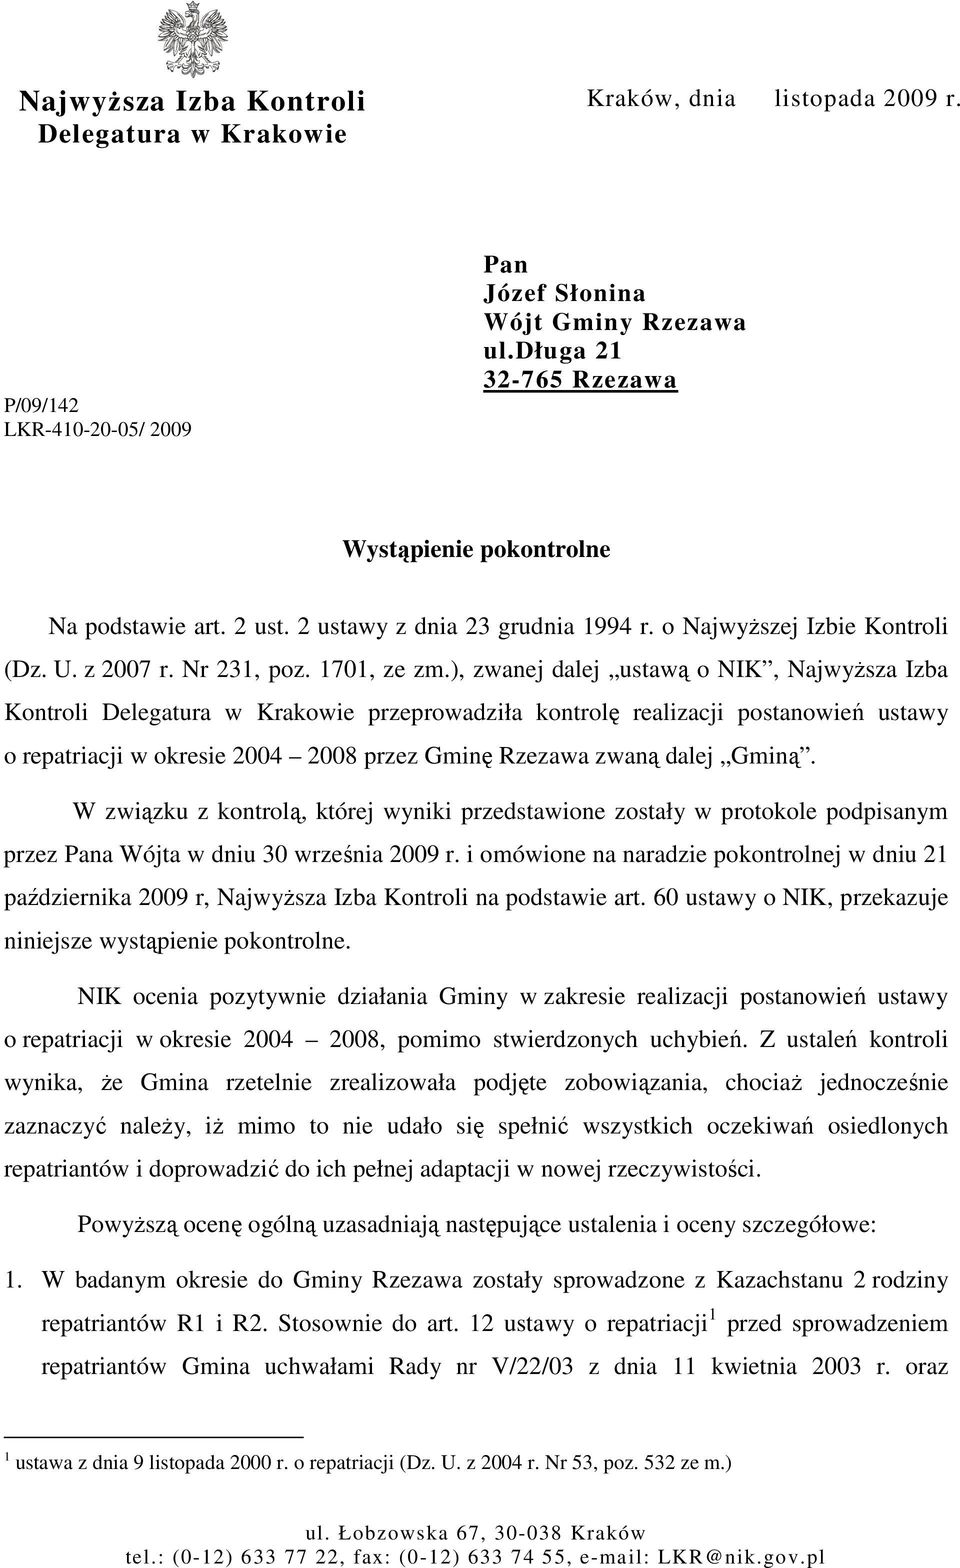 ), zwanej dalej ustawą o NIK, NajwyŜsza Izba Kontroli Delegatura w Krakowie przeprowadziła kontrolę realizacji postanowień ustawy o repatriacji w okresie 2004 2008 przez Gminę Rzezawa zwaną dalej